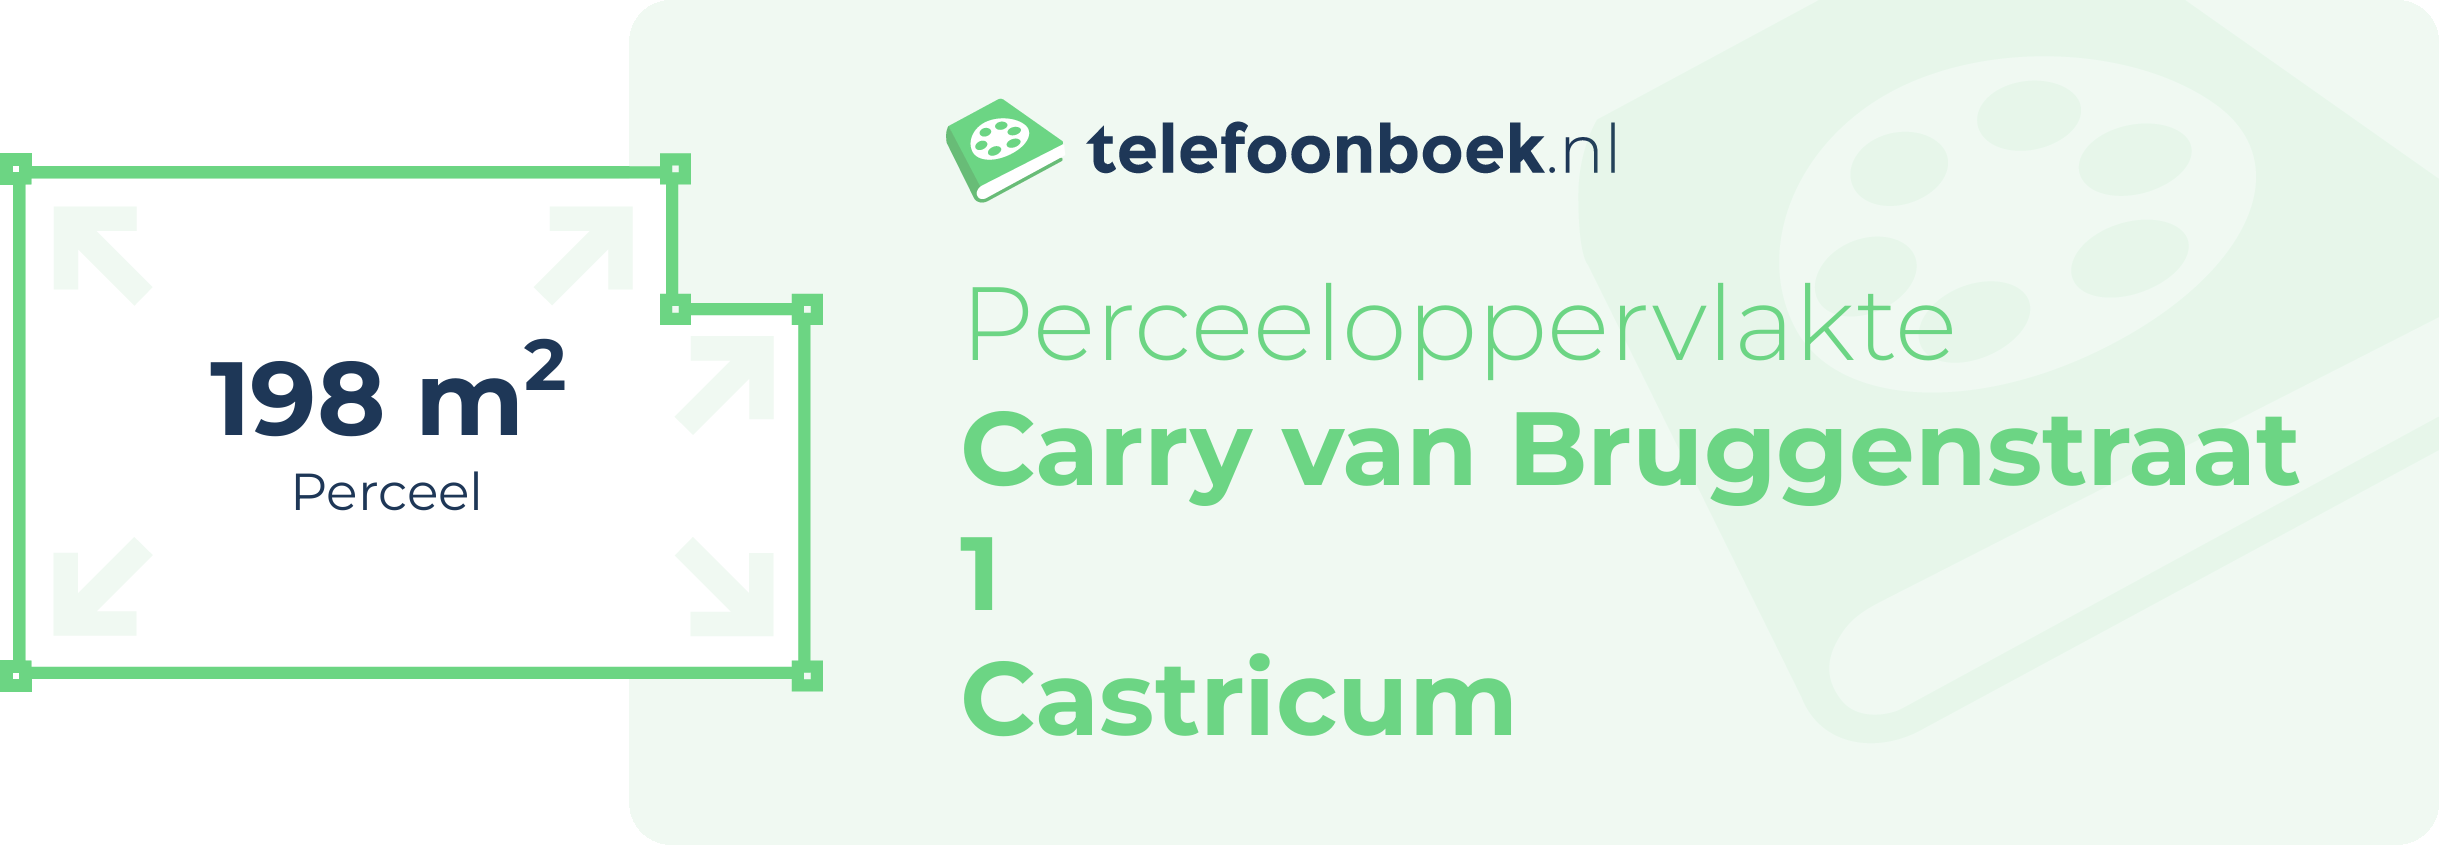 Perceeloppervlakte Carry Van Bruggenstraat 1 Castricum